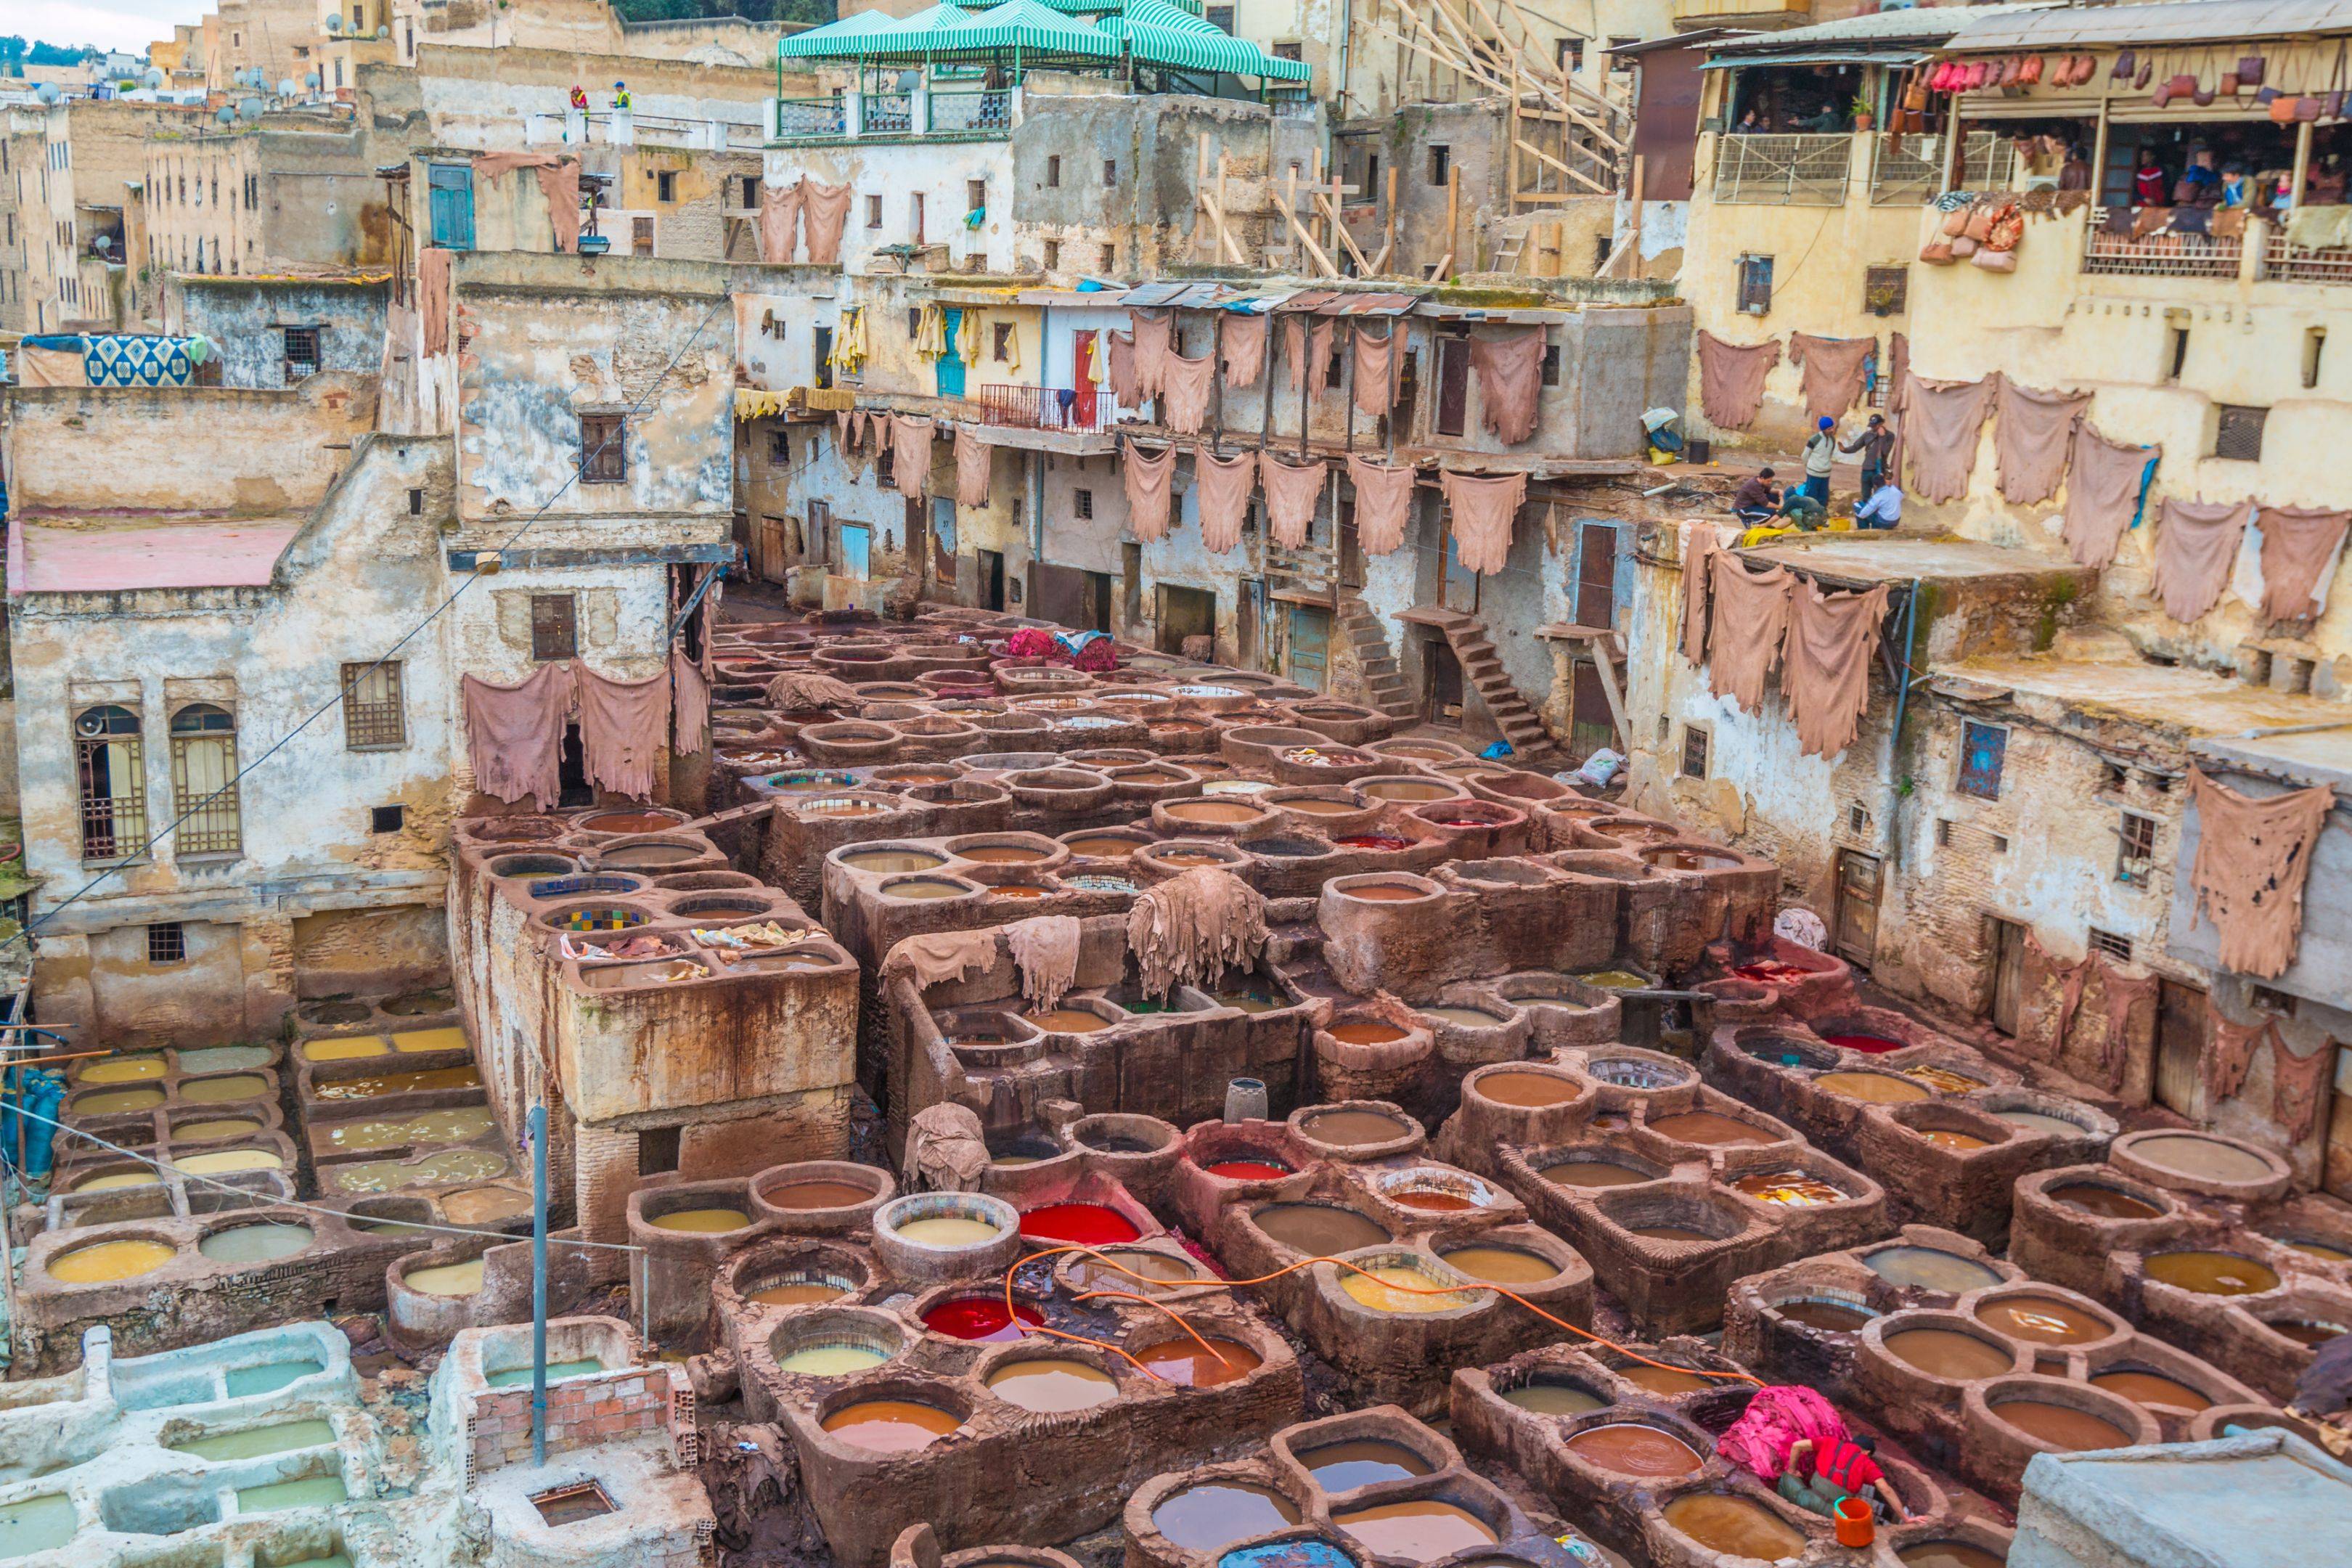 Fez “Ciudad Imperial” de Marruecos